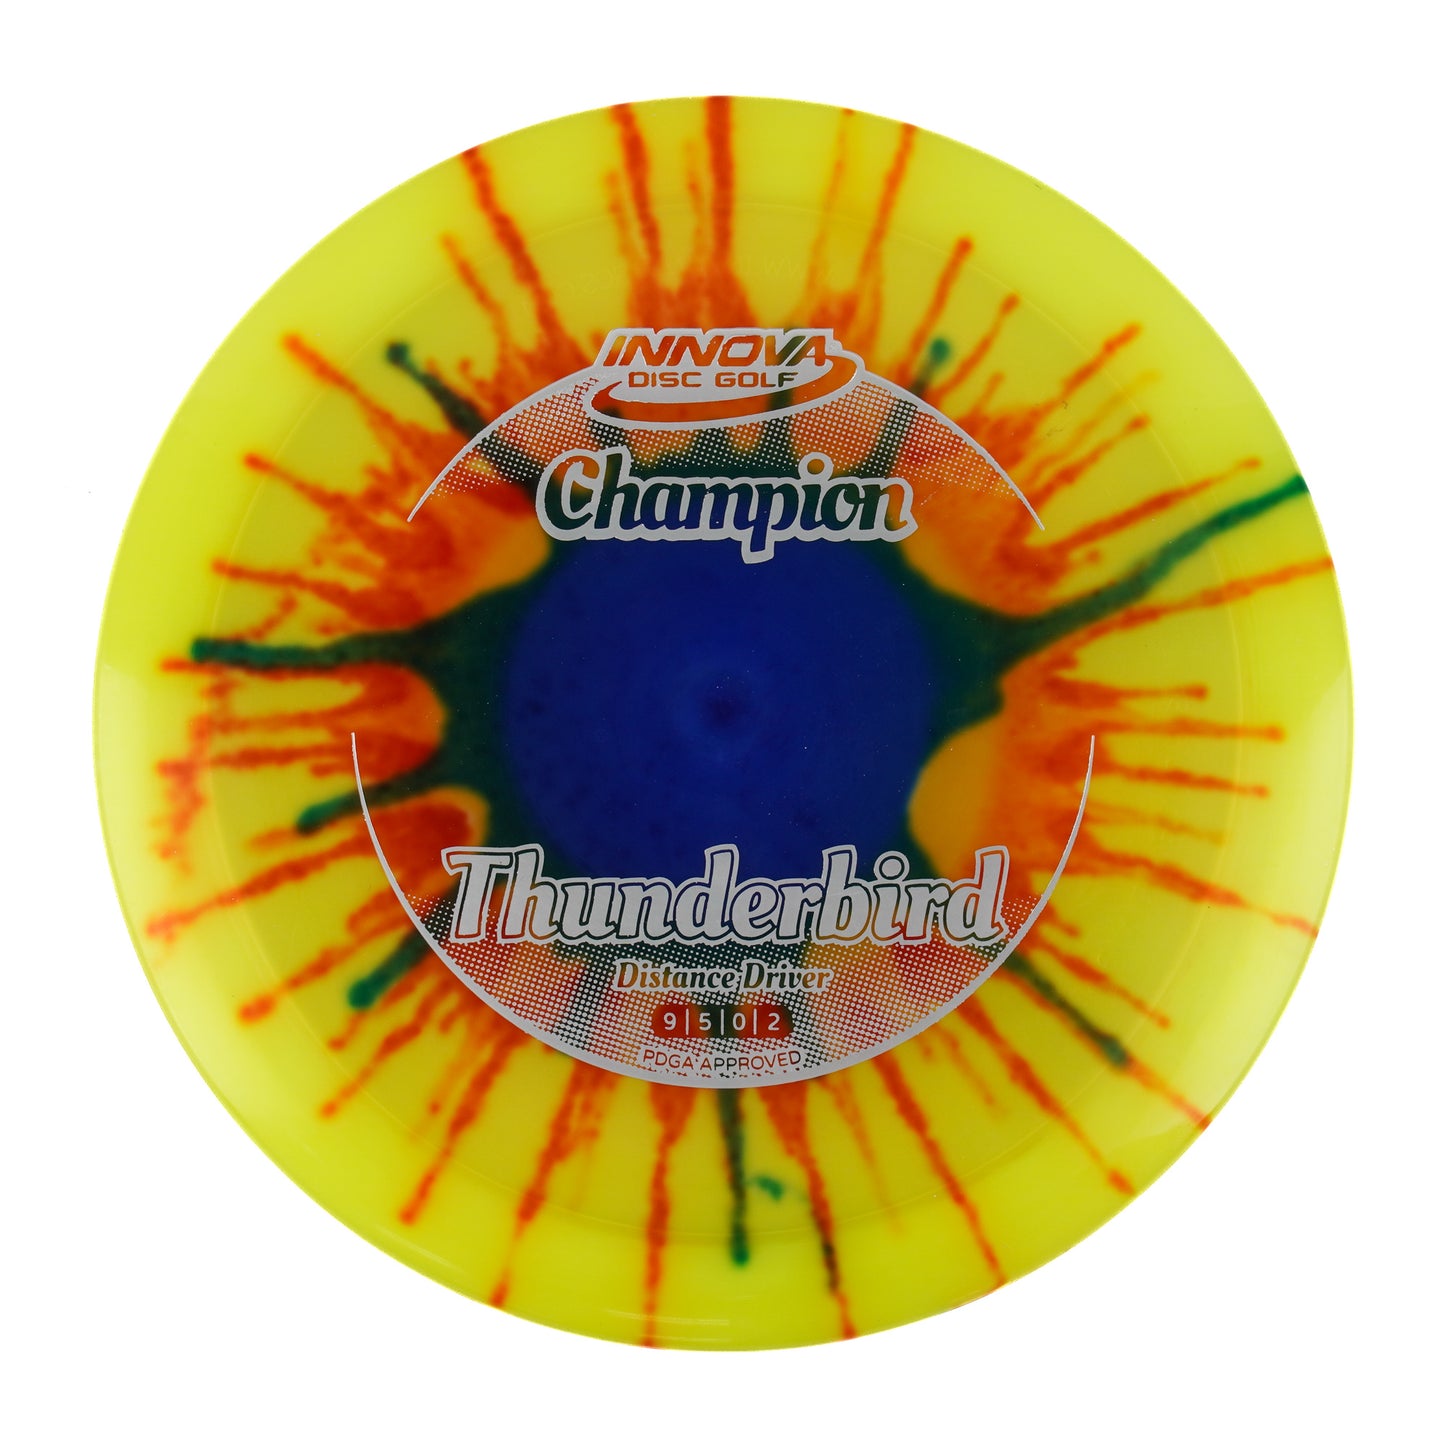 Innova Thunderbird - I-Dye Champion 175g | Style 0004